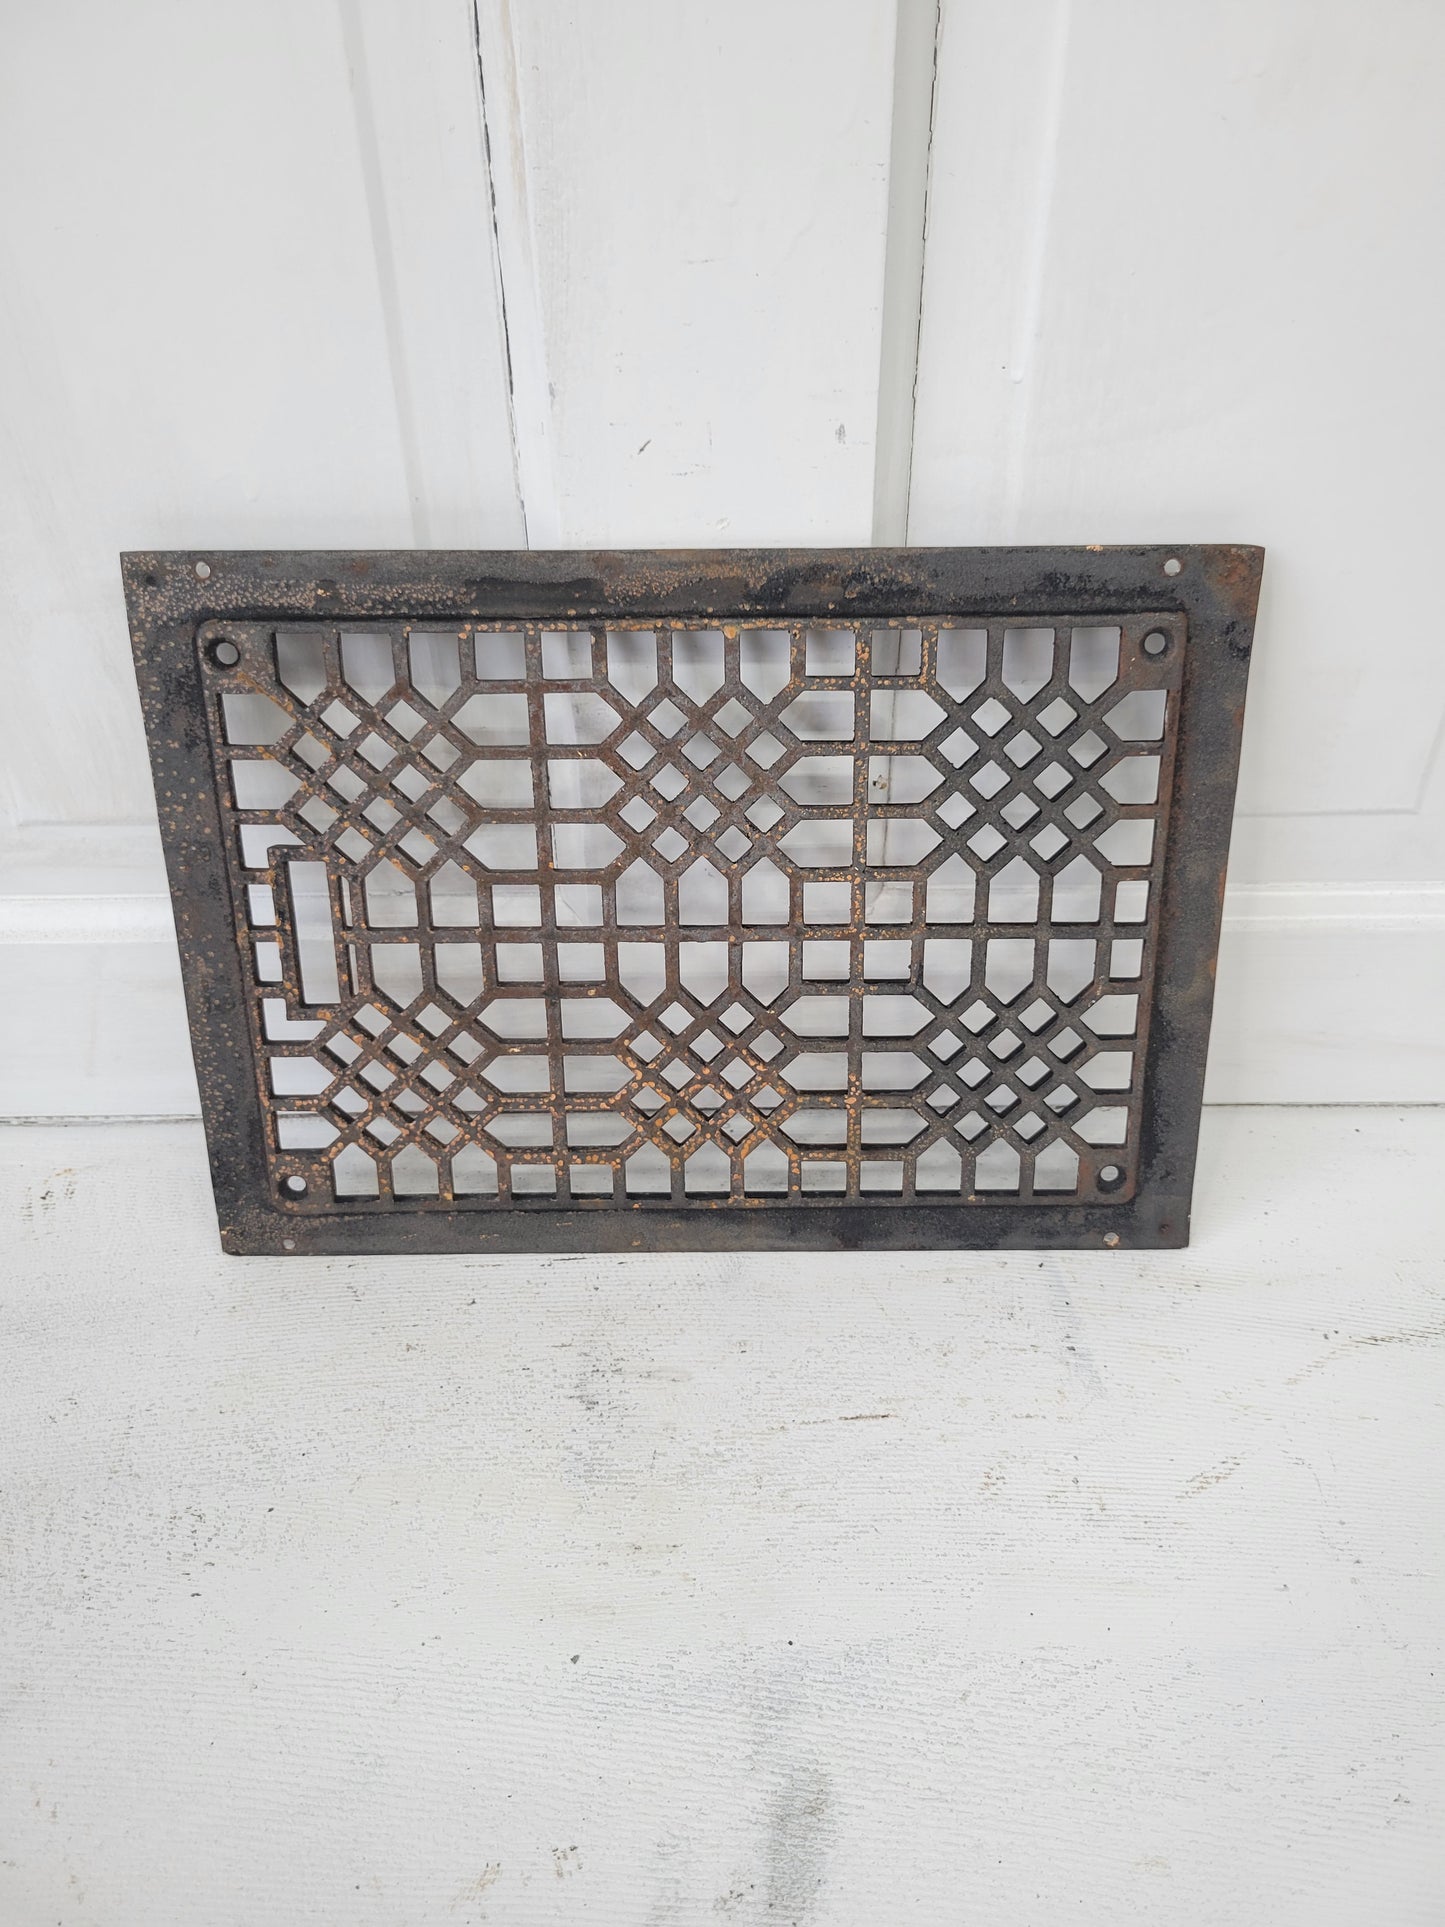 Antique Iron Lattice Pattern 14 x 10 Ornate Floor Grate, Antique Iron Vent Cover #061206